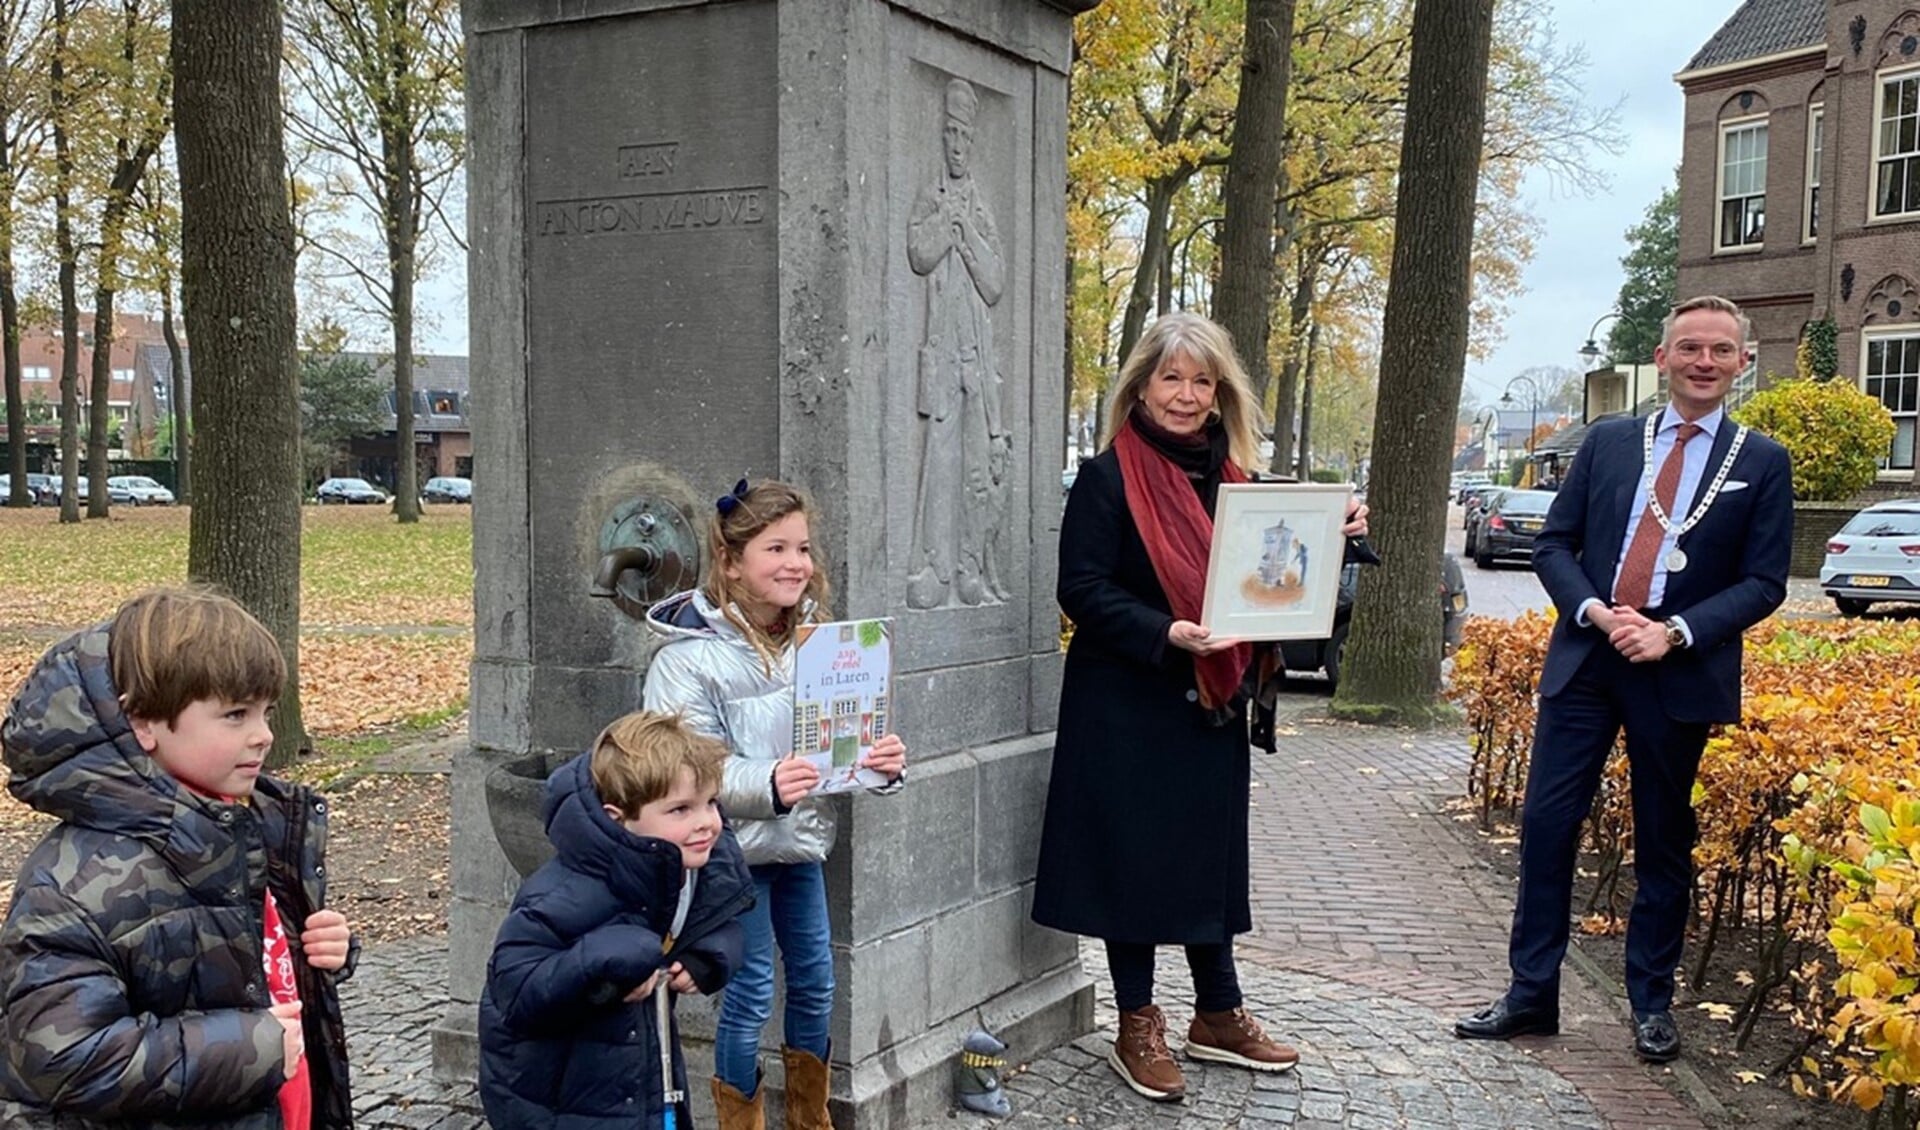 Gitte Spee met haar tekening van burgemeester Nanning Mol voor de nieuwe versie van 'aap & mol in Laren'.